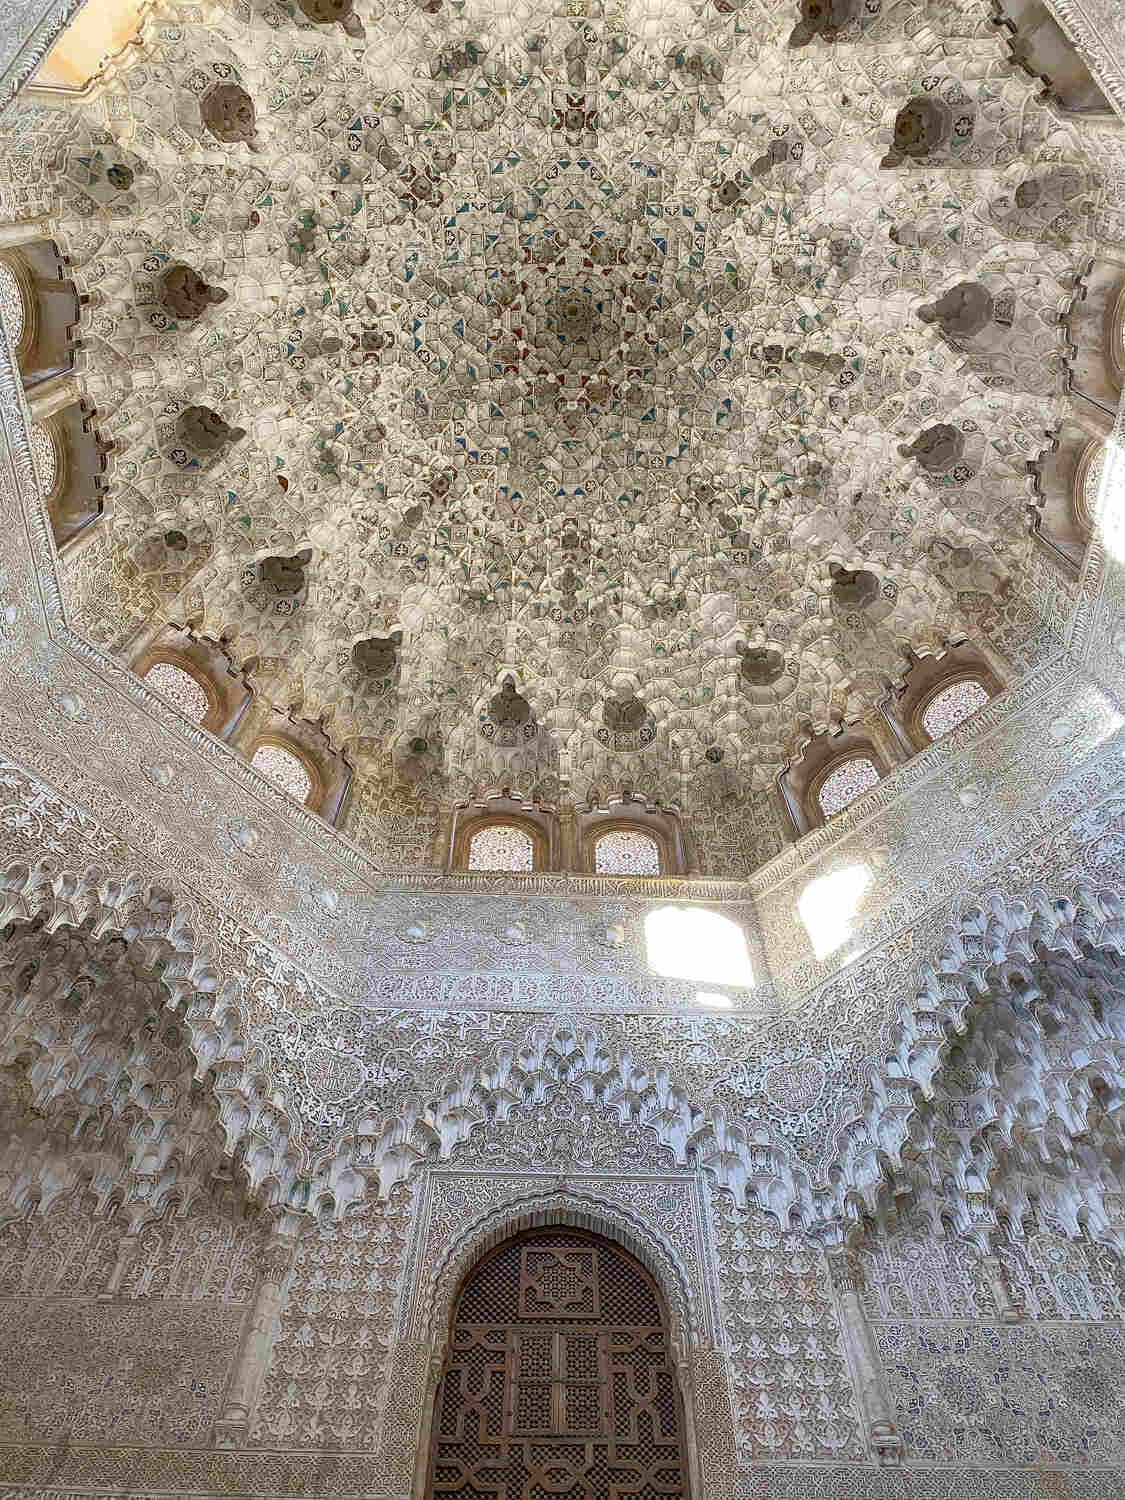 Islamic art inside the Alhambra.jpg